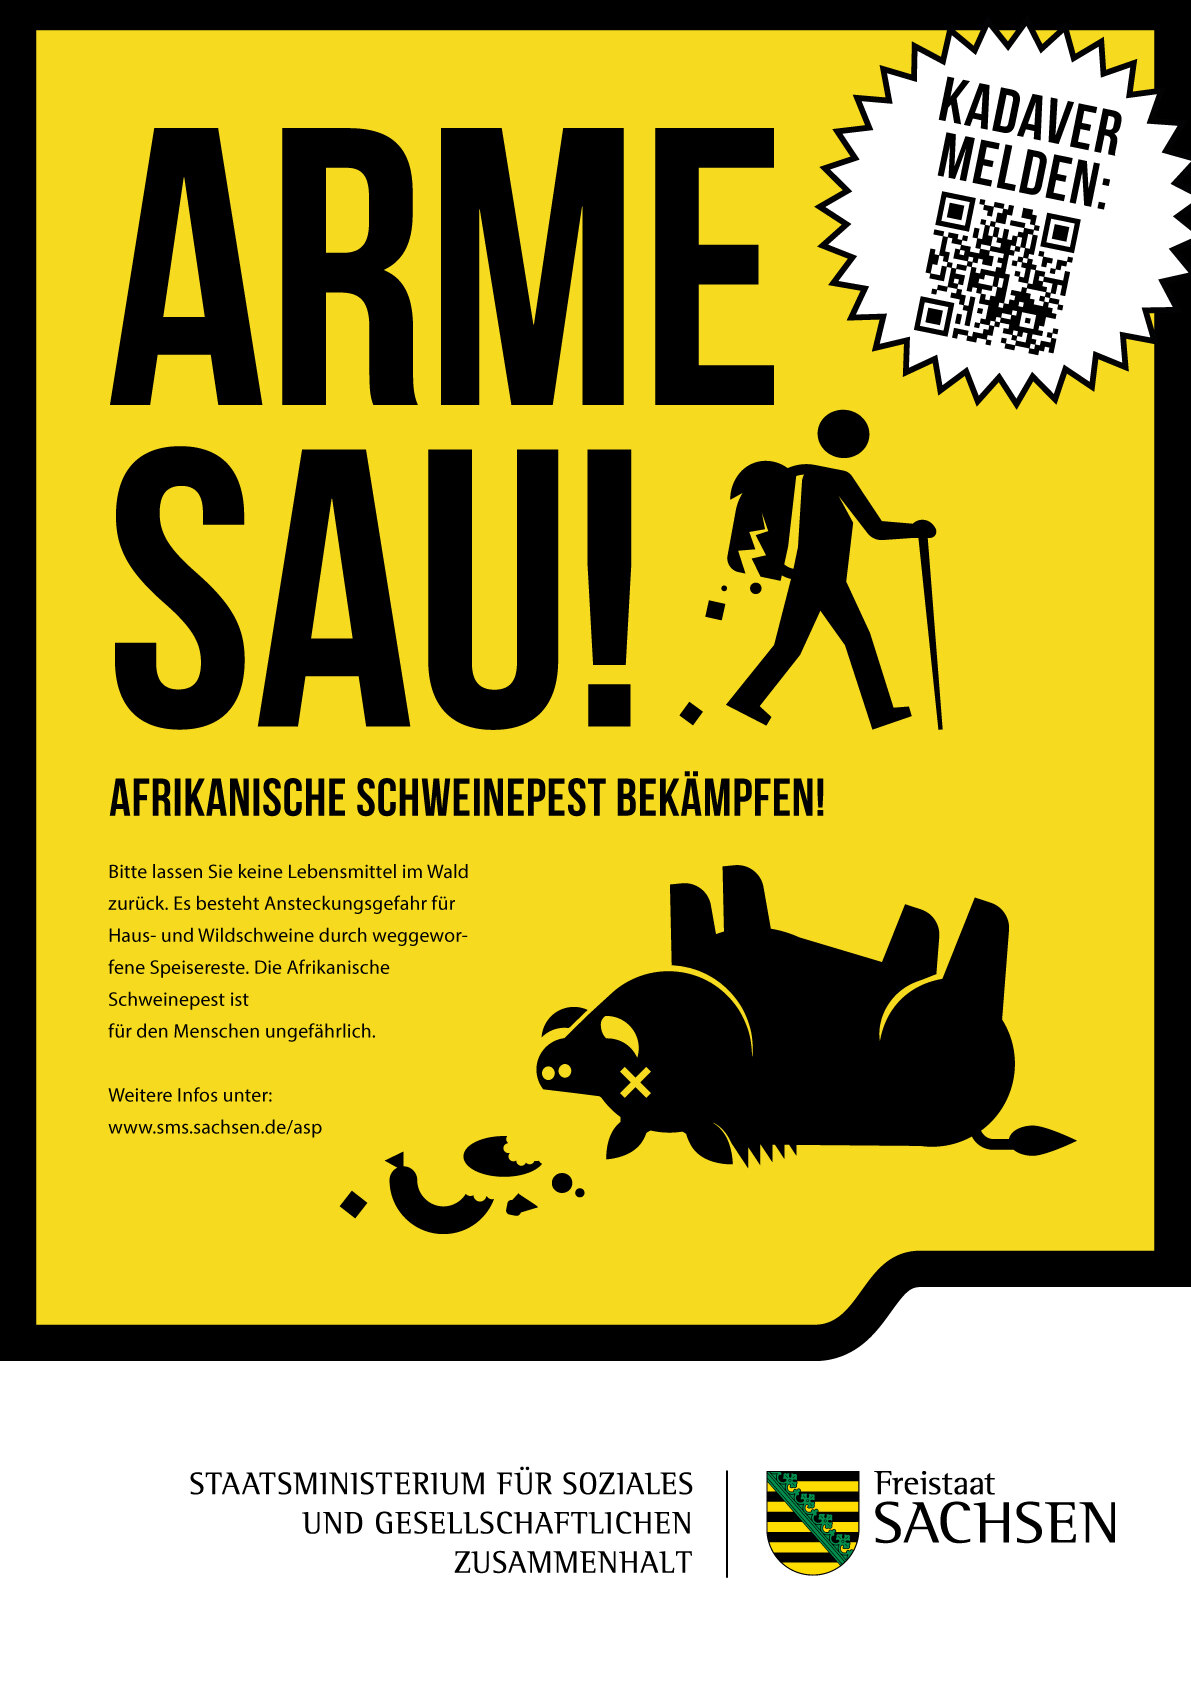 Ein in warnender Optik gestaltetes Plakatmotiv mit der Überschrift "Arme Sau! Afrikanische Schweinepest verhindern!"